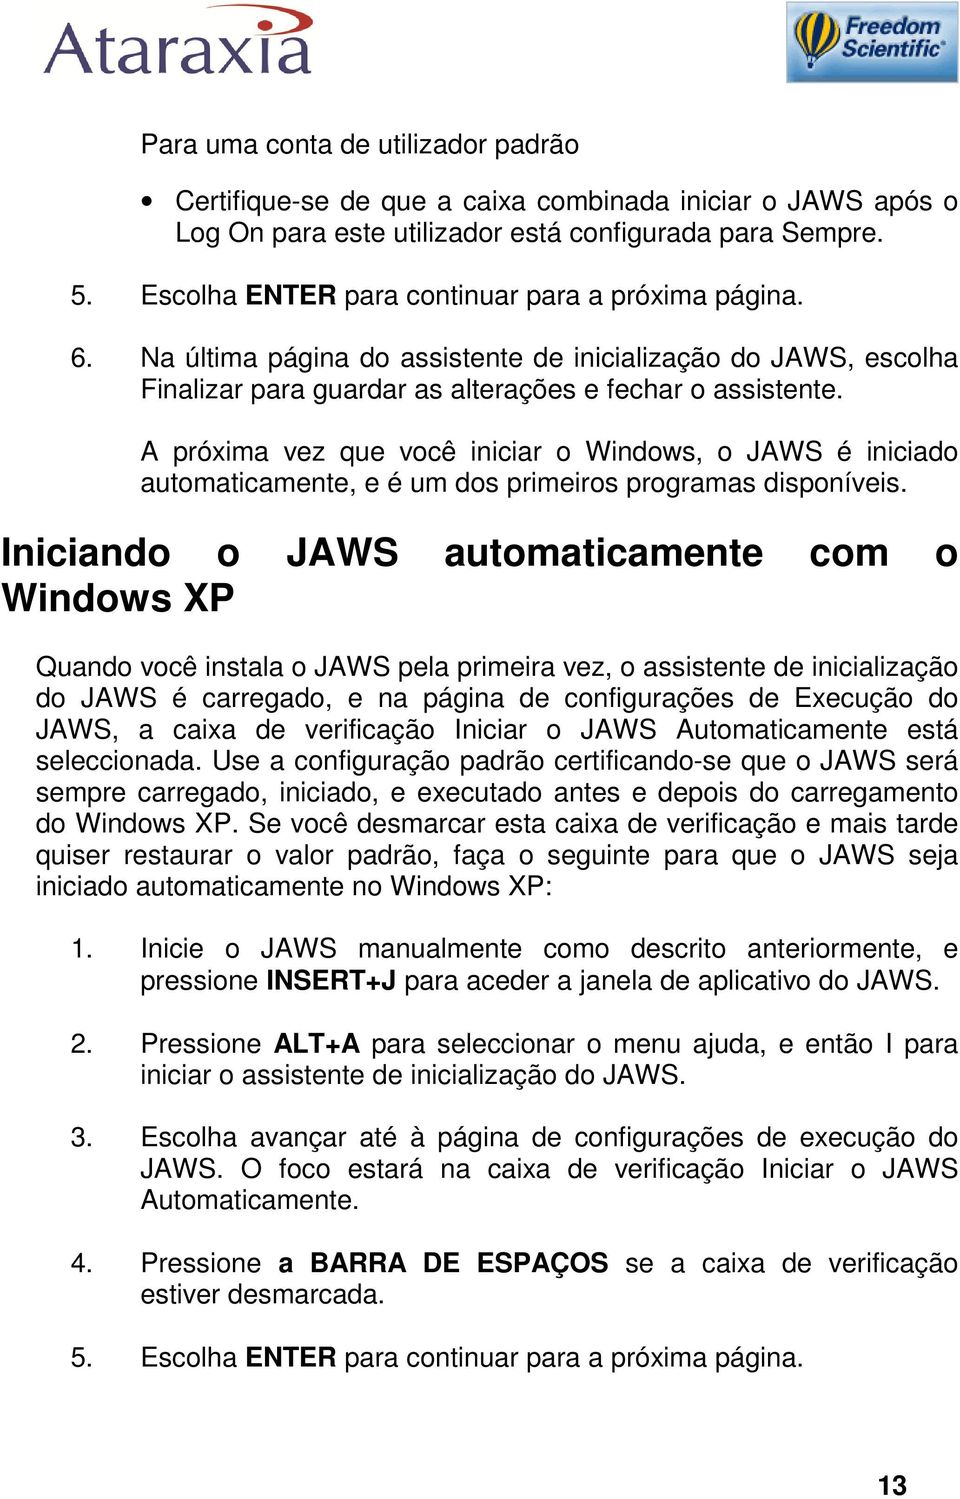 A próxima vez que você iniciar o Windows, o JAWS é iniciado automaticamente, e é um dos primeiros programas disponíveis.